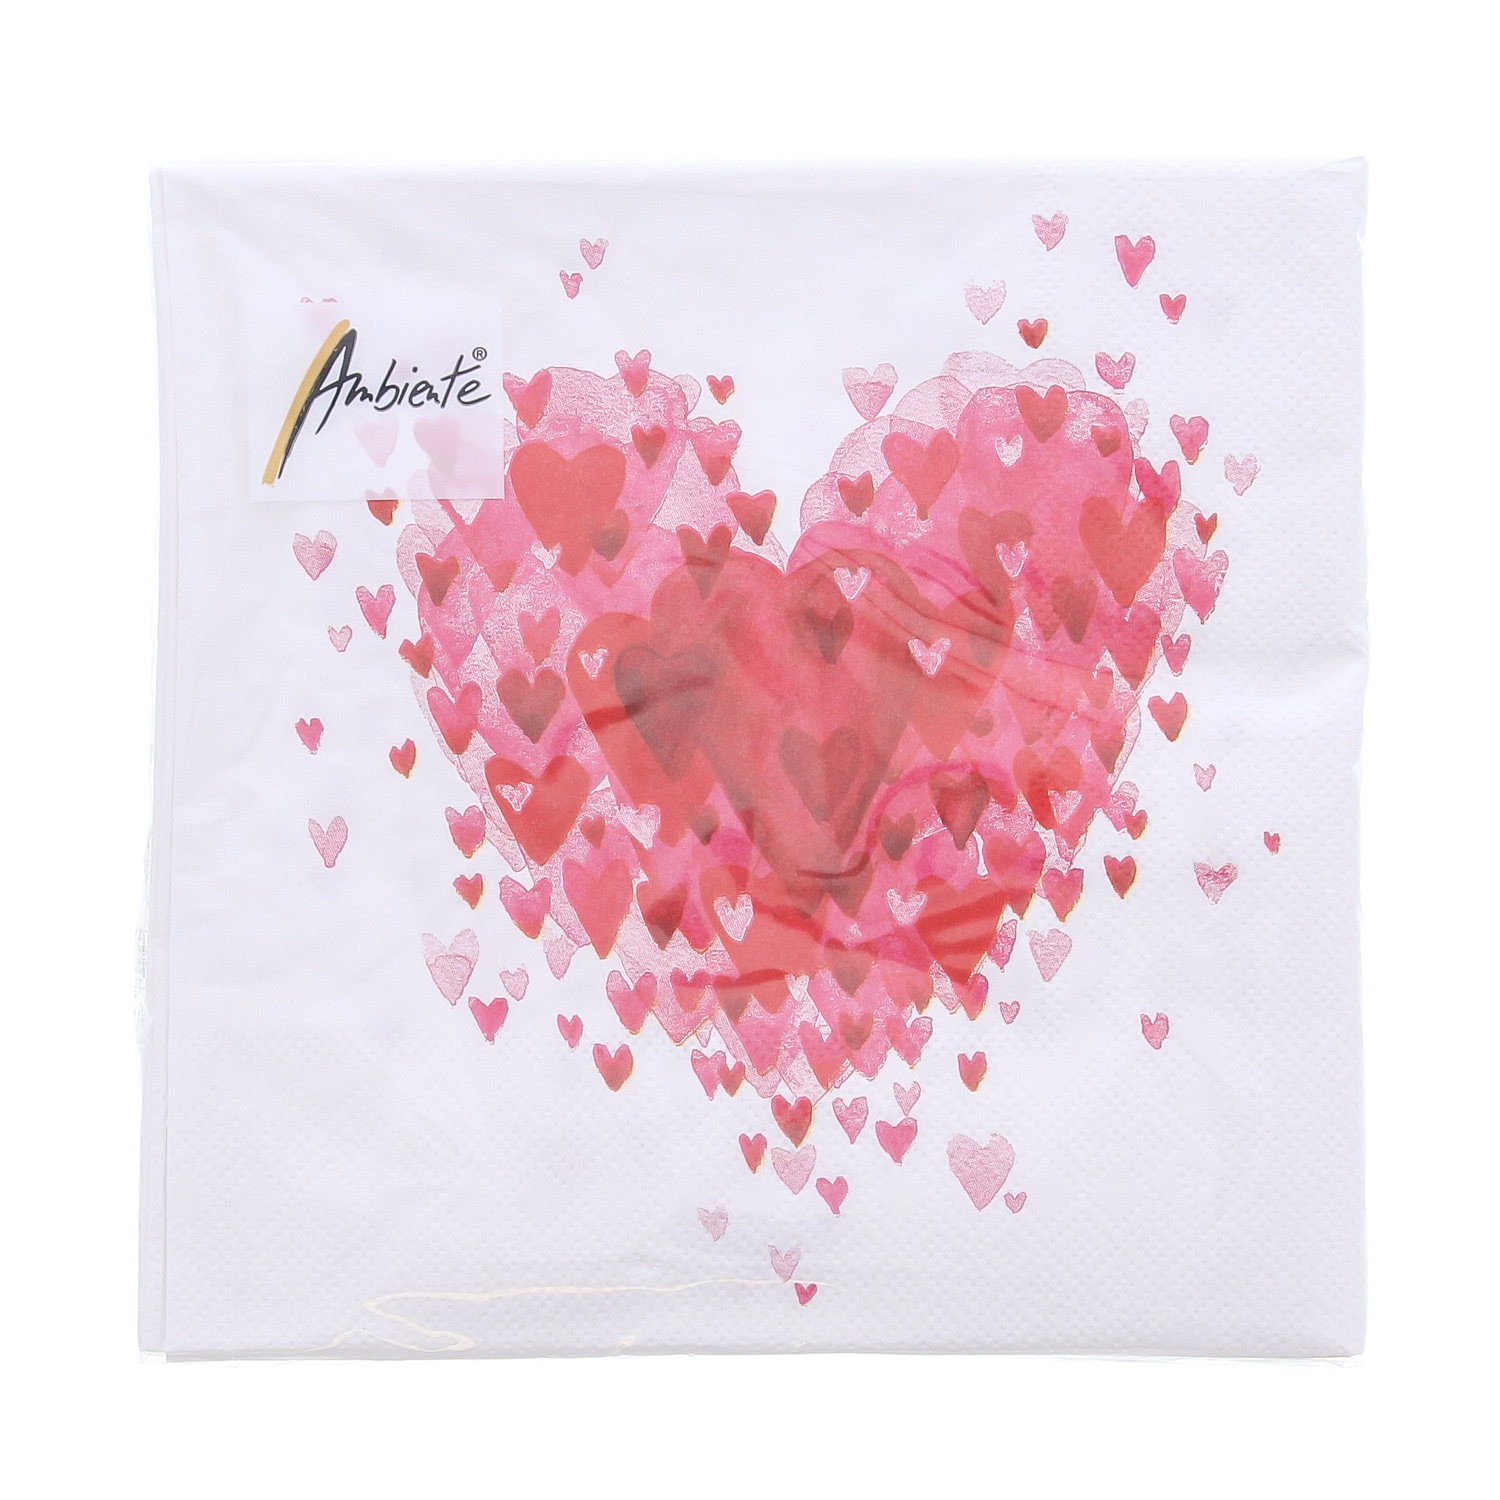 Serviette Heart of hearts 33 cm x 33 cm - 165 * 165 * 25 mm - 1 paquet avec 20 serviettes